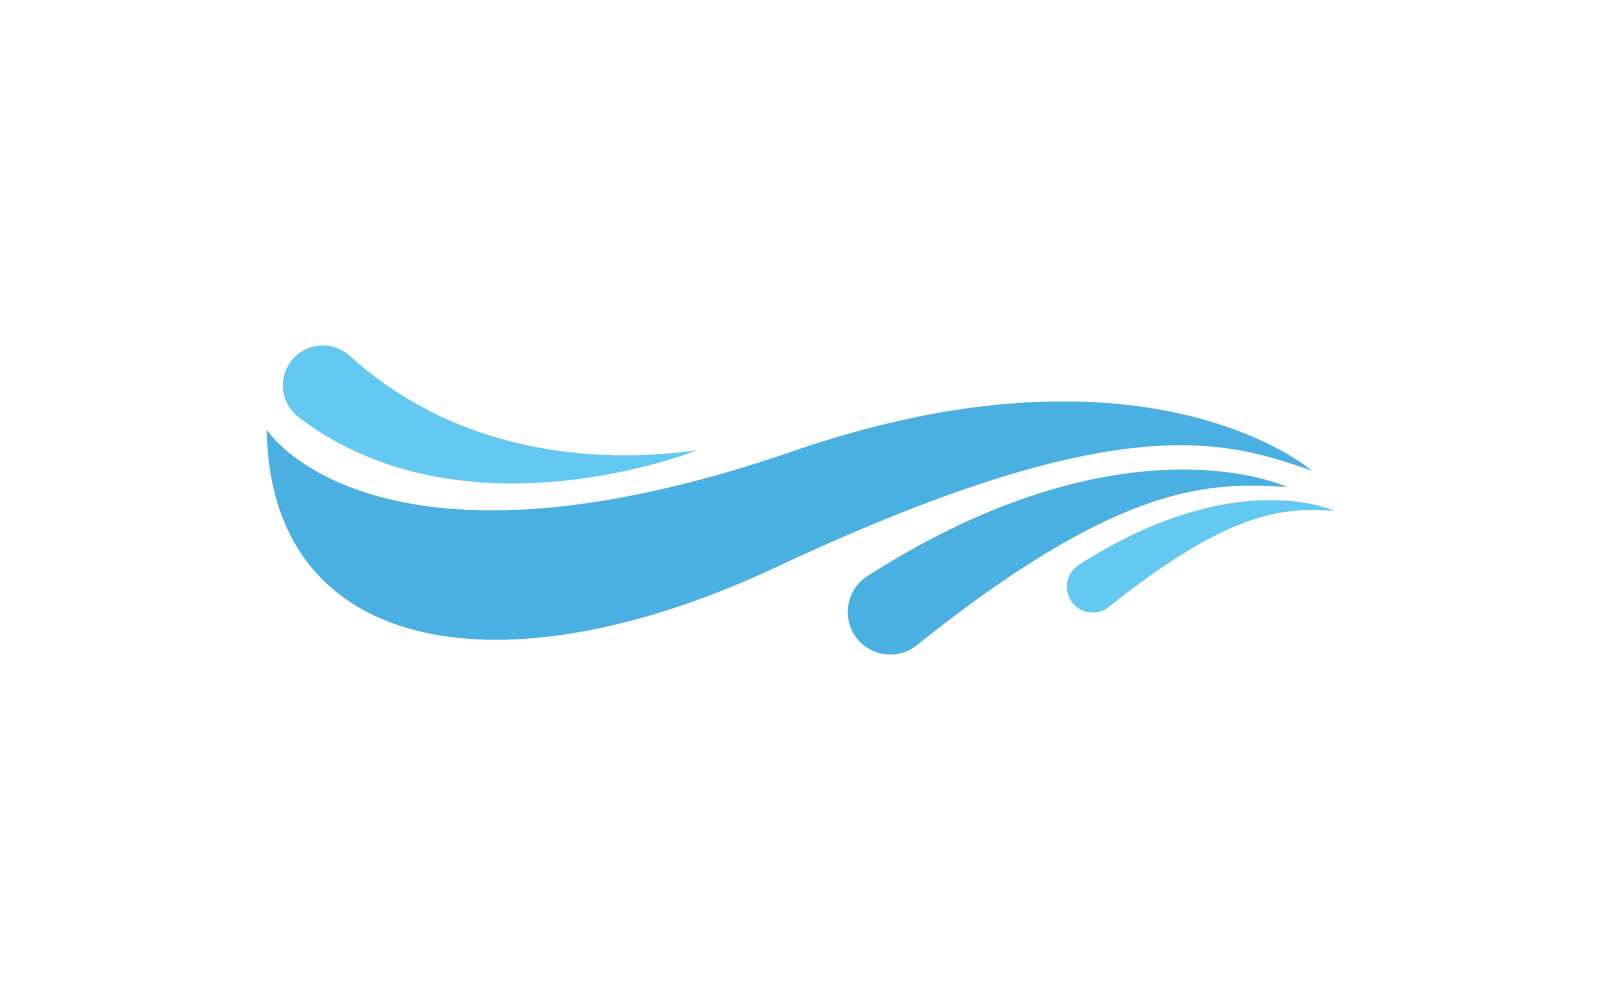 Logo Water Wave illustration vector flat design